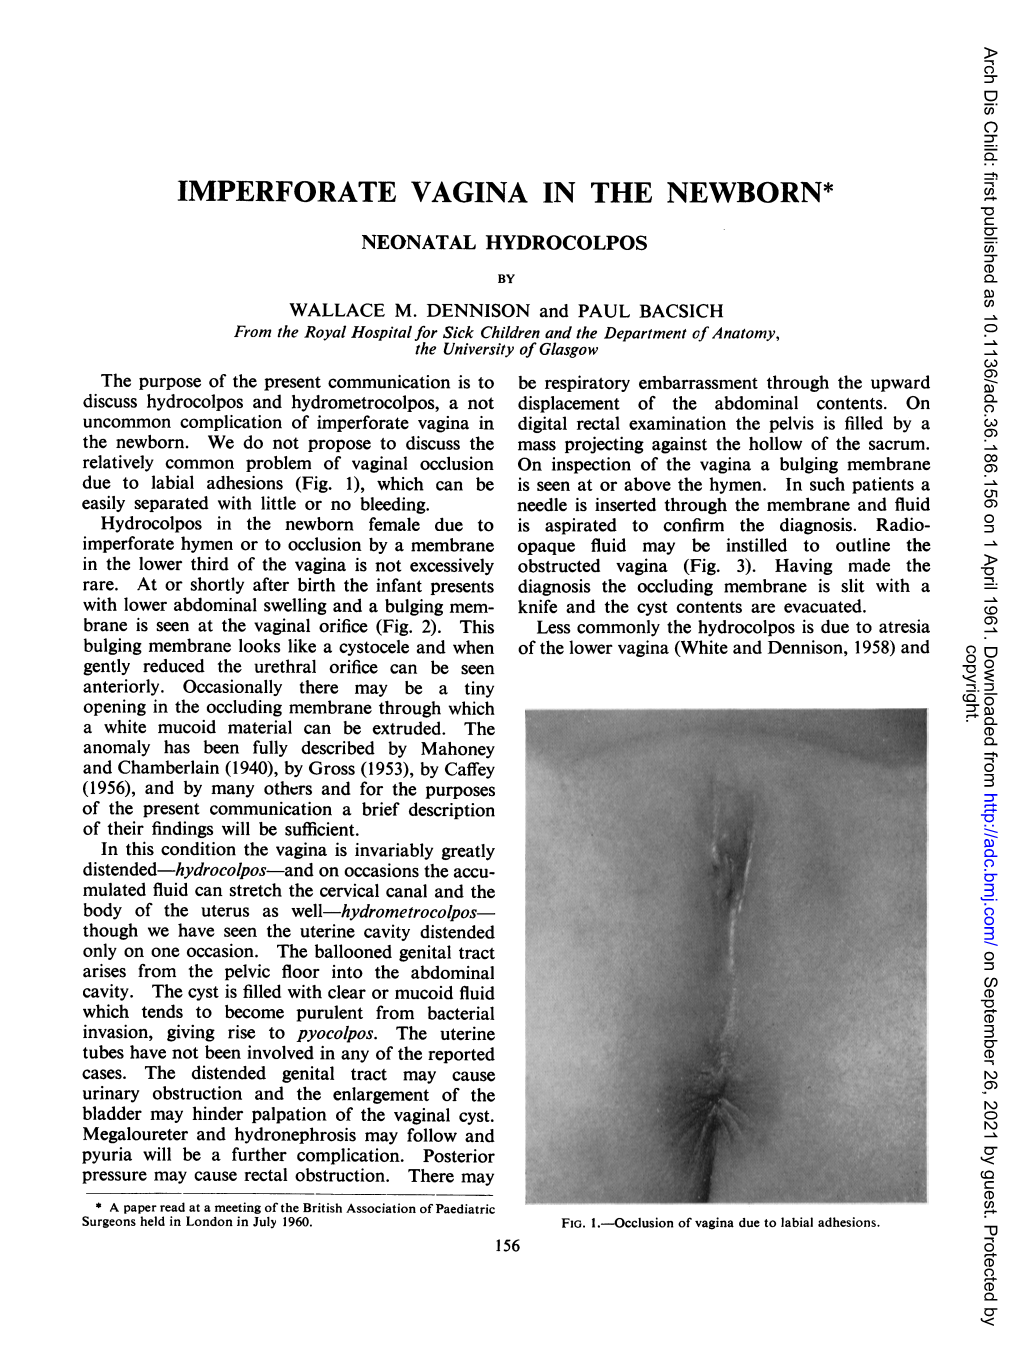 Imperforate Vaginain the Newborn*